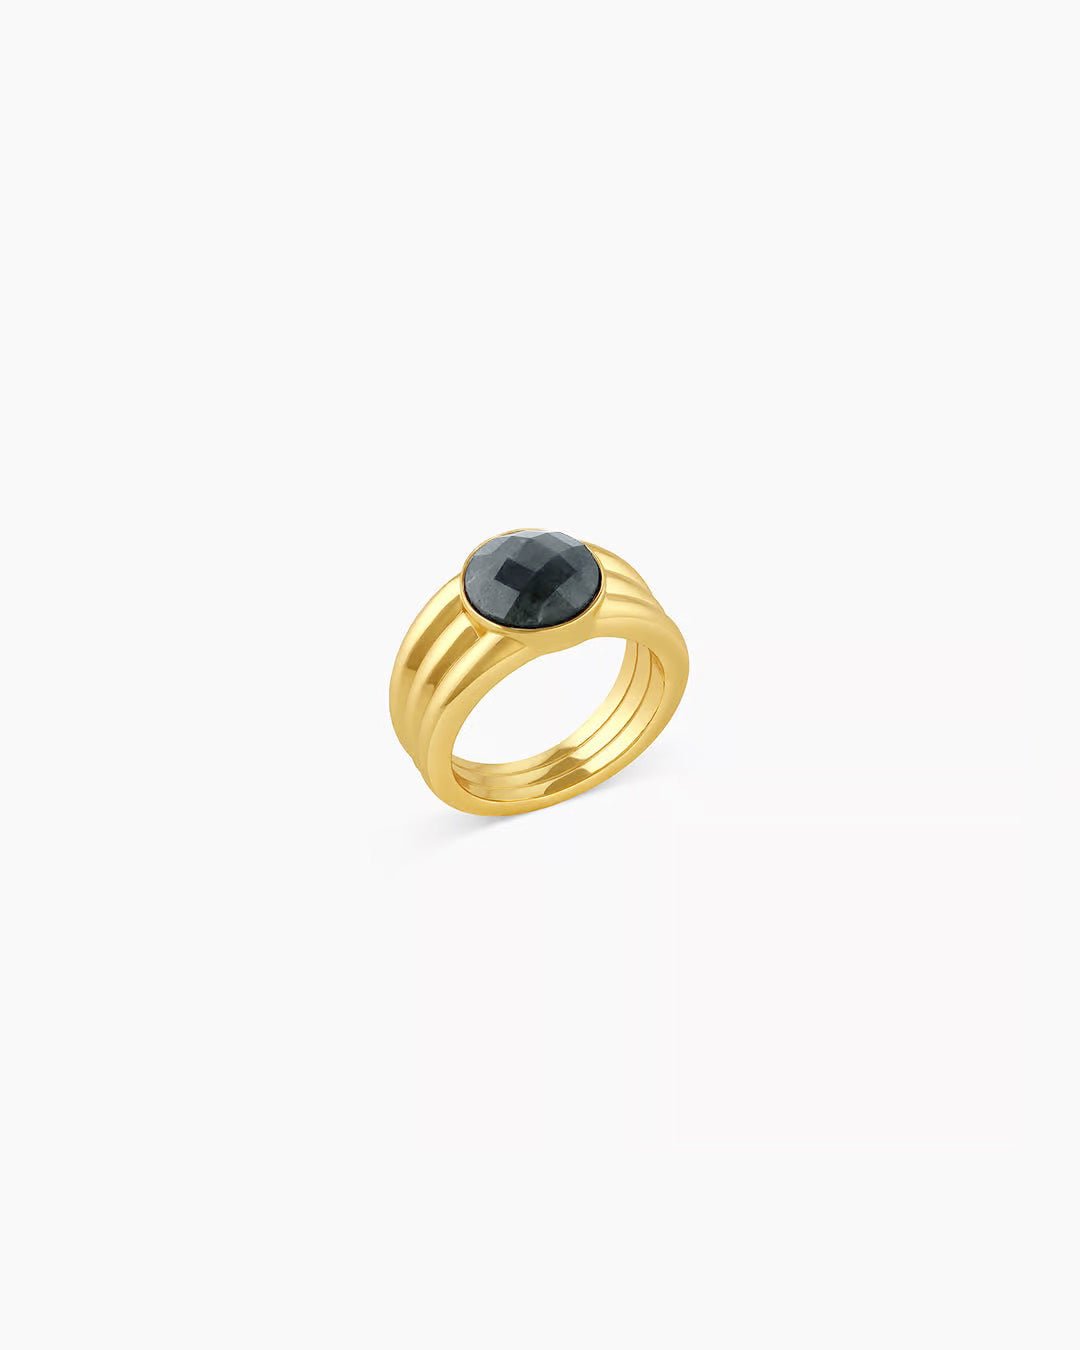 Power Gemstone Reed Ring for Balance Labradorite Ring || option::Gold Plated, Labradorite